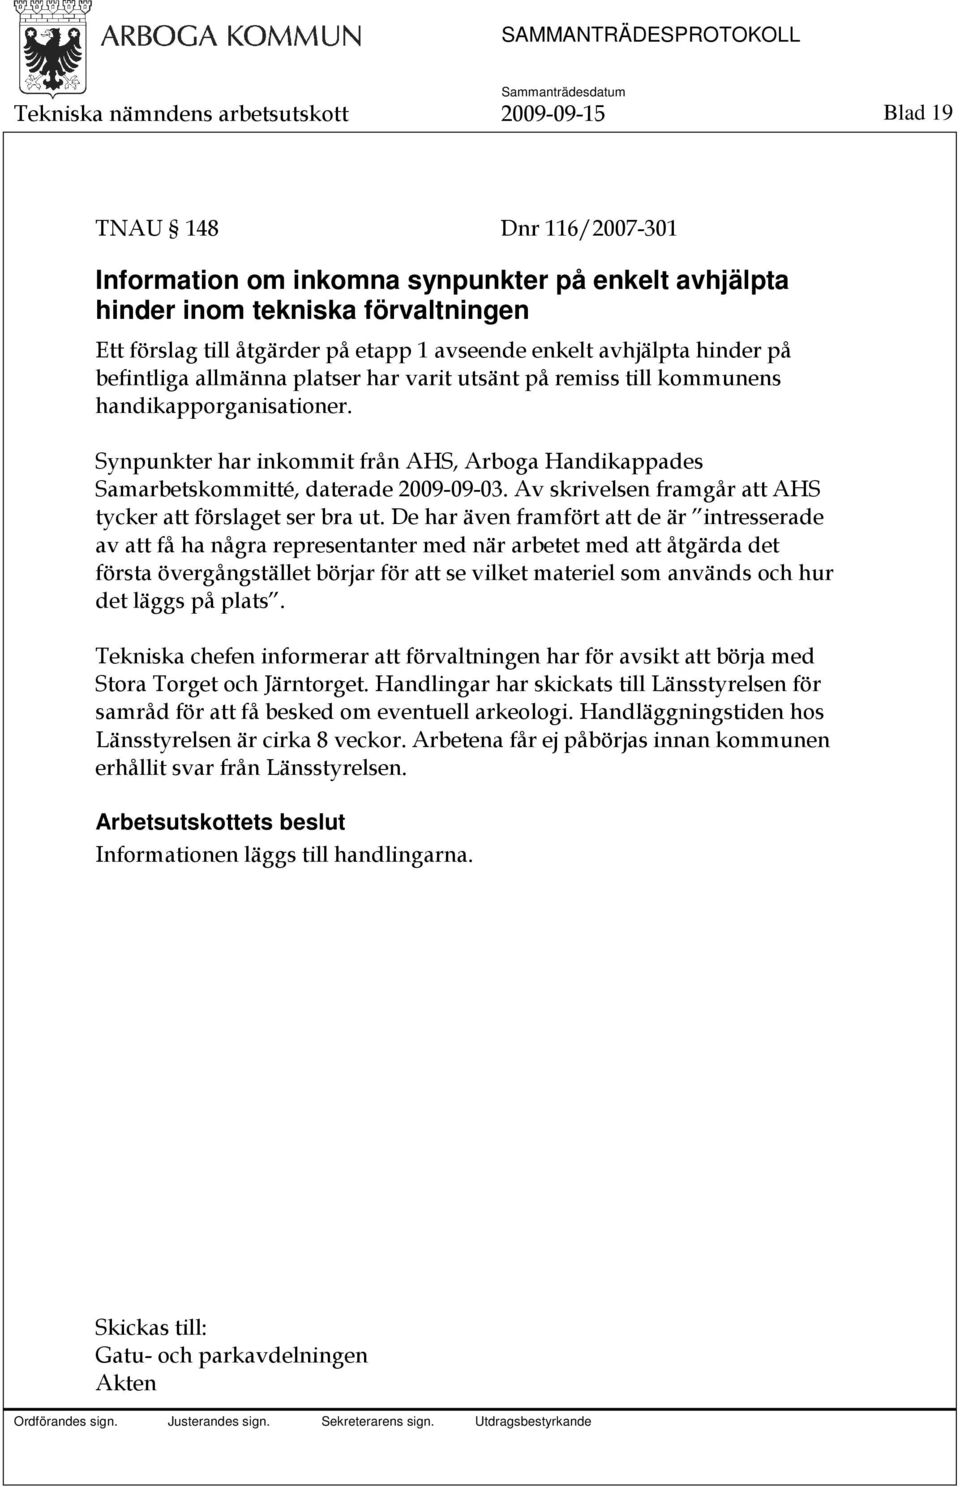 Synpunkter har inkommit från AHS, Arboga Handikappades Samarbetskommitté, daterade 2009-09-03. Av skrivelsen framgår att AHS tycker att förslaget ser bra ut.